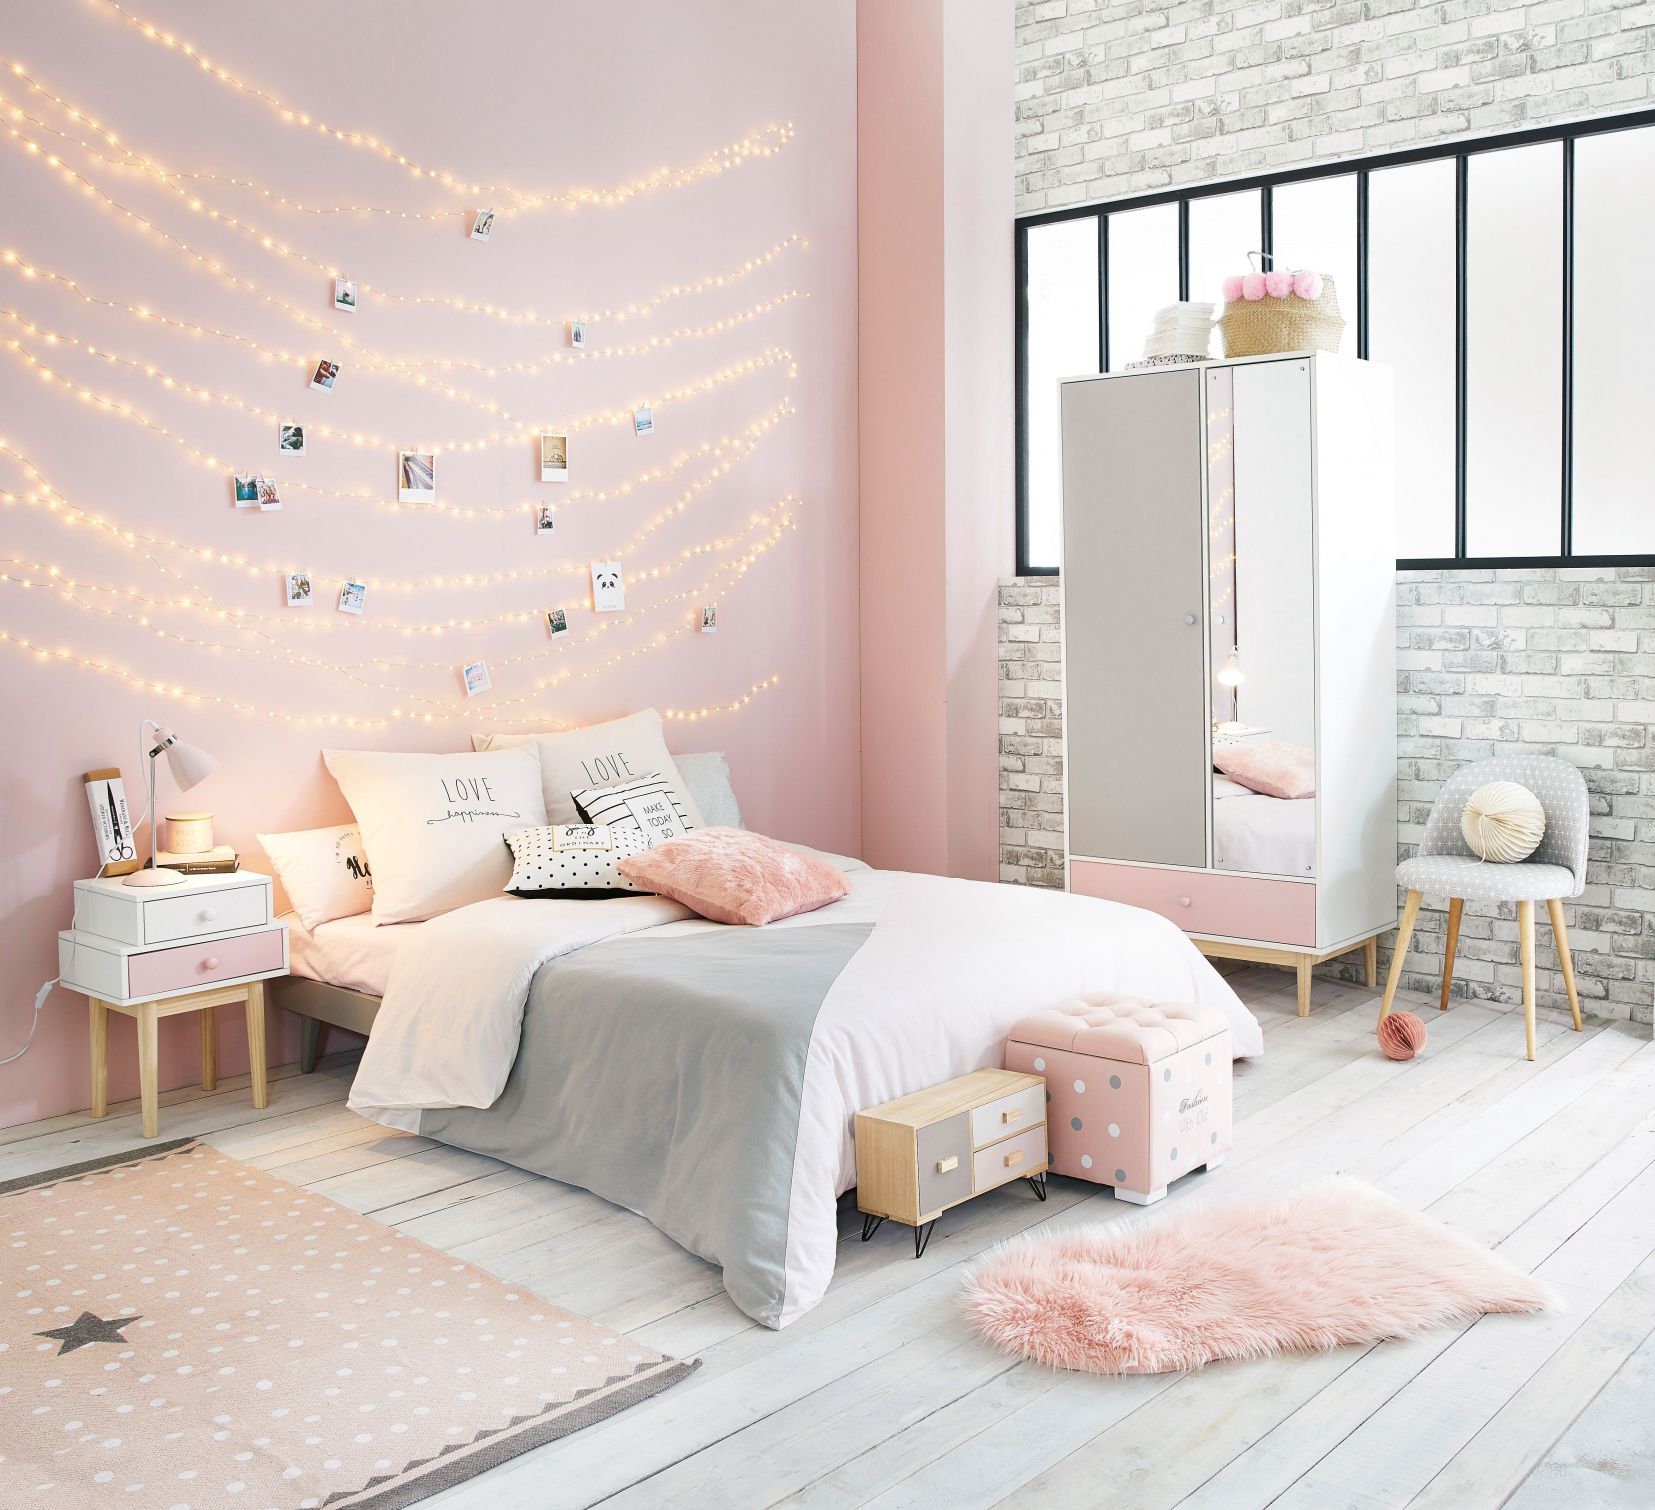 Gam hồng pastel cũng là ý tưởng tuyệt vời cho cô công chúa nhỏ. Bức tường hồng trở nên ấm áp lung linh hơn với bộ dây đèn LED được trang trí khéo léo, cùng với đó là một loạt nội thất mini trông đáng yêu vô cùng.